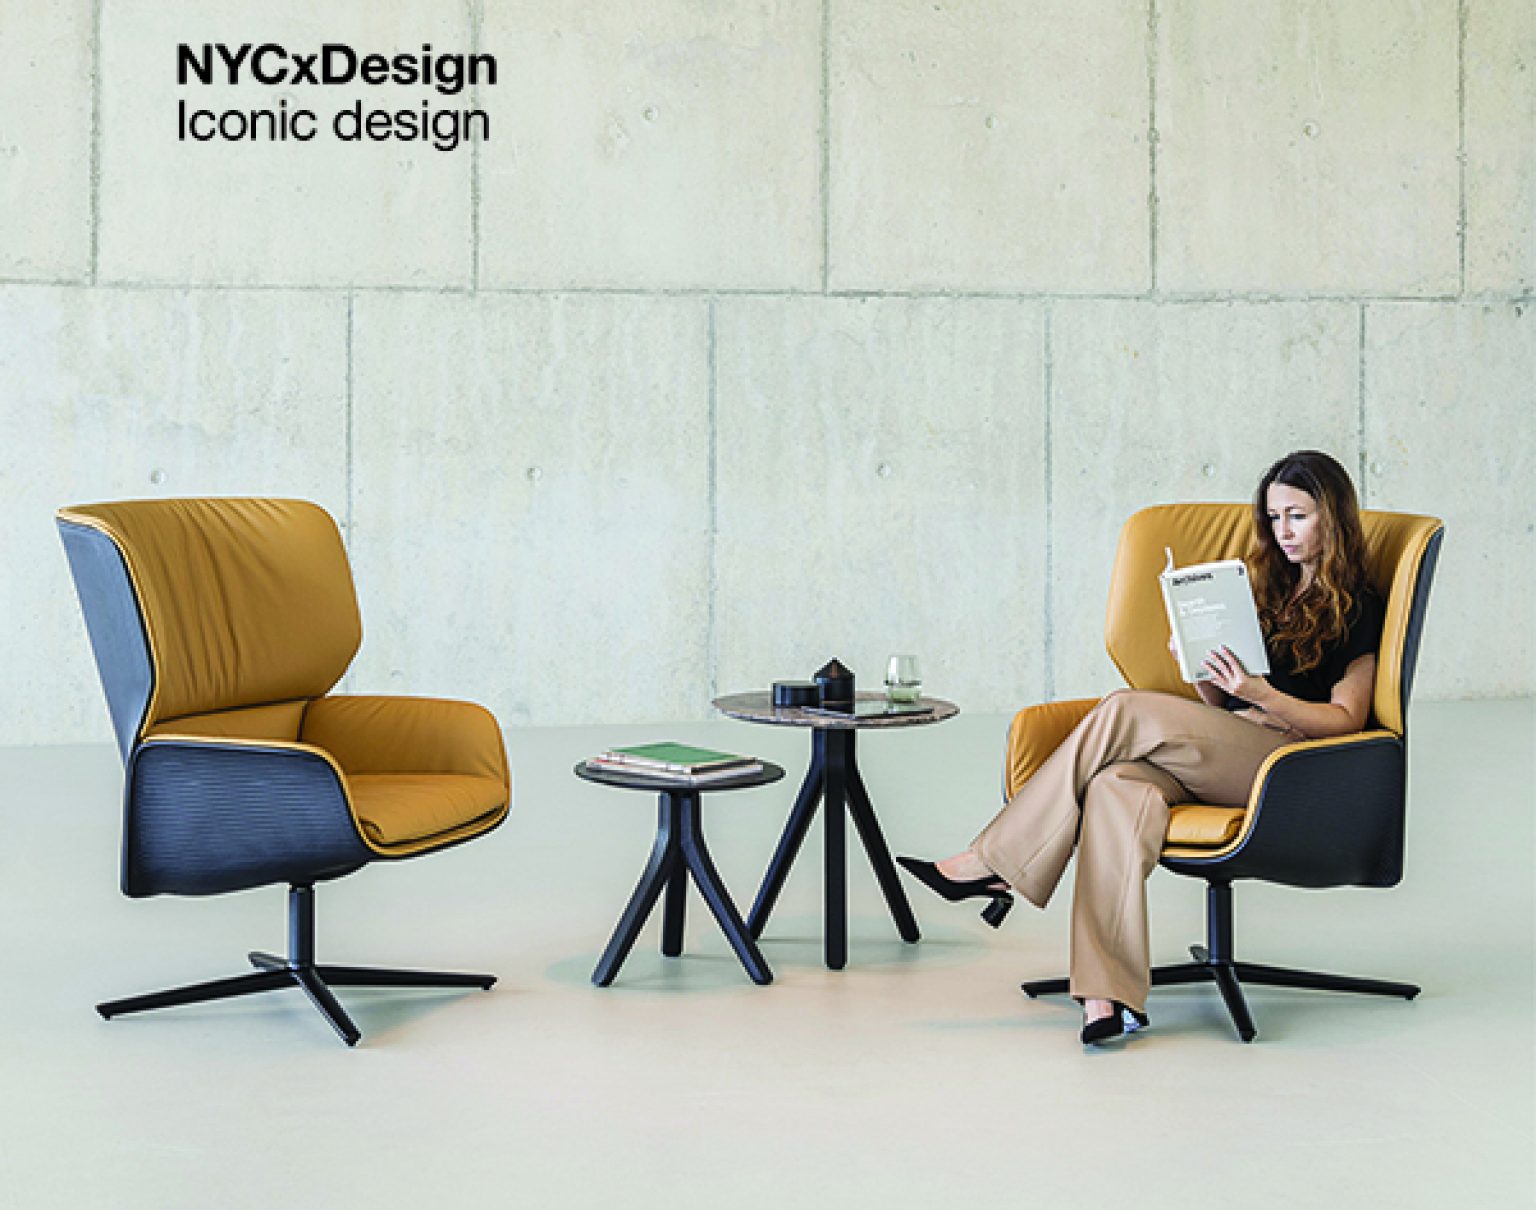 Nuez Lounge BIO® de Andreu World recibe el galardón a mejor ‘Diseño Icónico’ en los Premios NYCxDESIGN